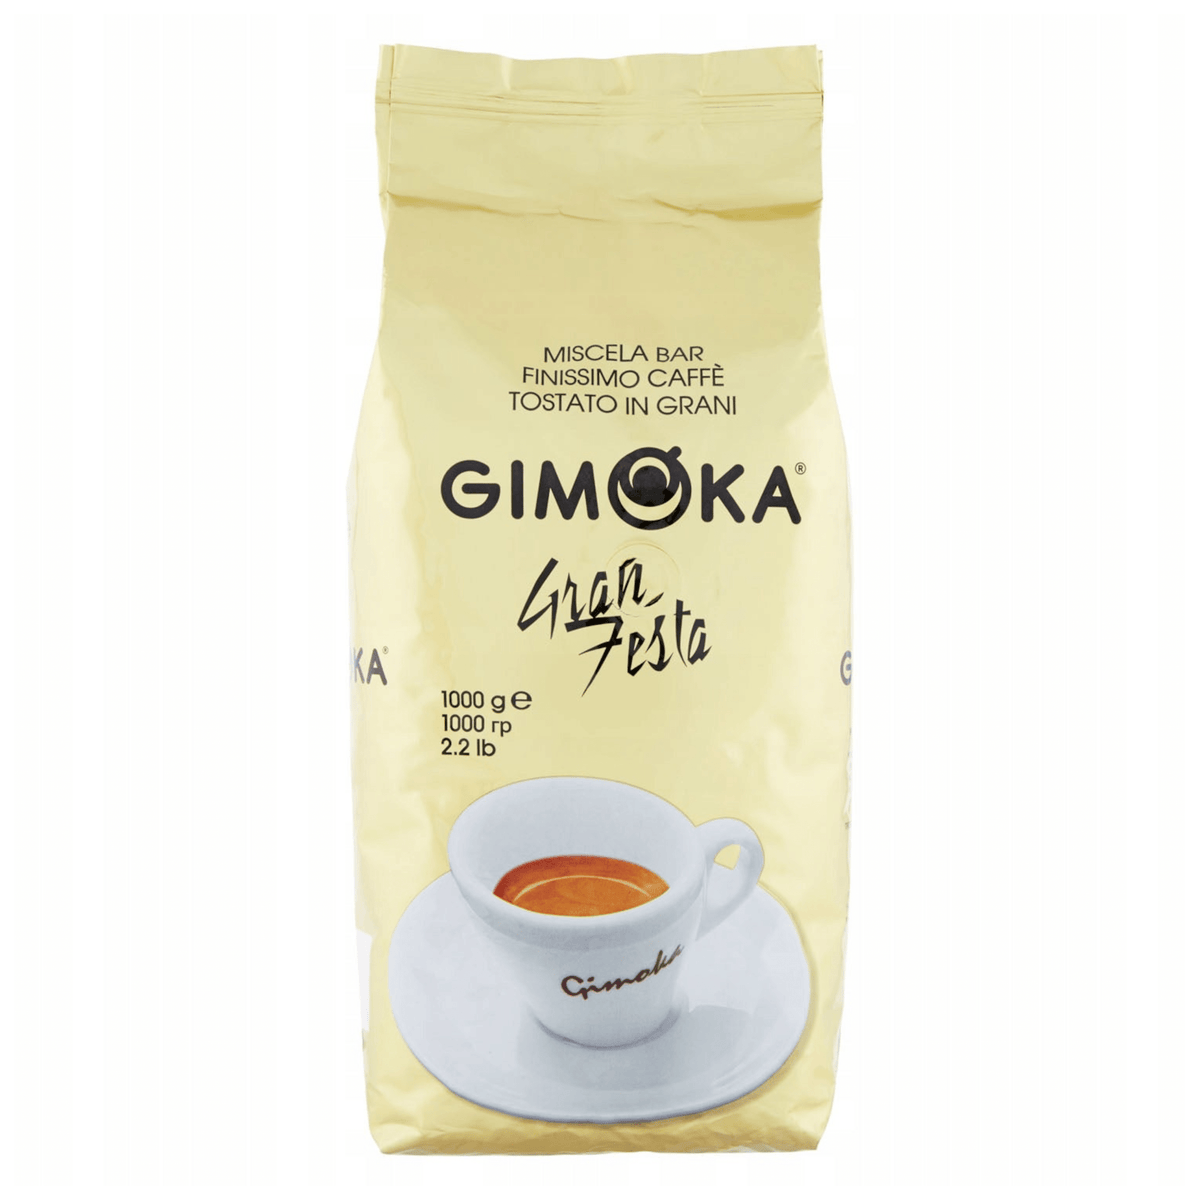 Produkt GIMOKA Kawa ziarnista Kawa ziarnista GIMOKA Dolcevita Gran Bar Festa MIX 4x 1 kg Z00169